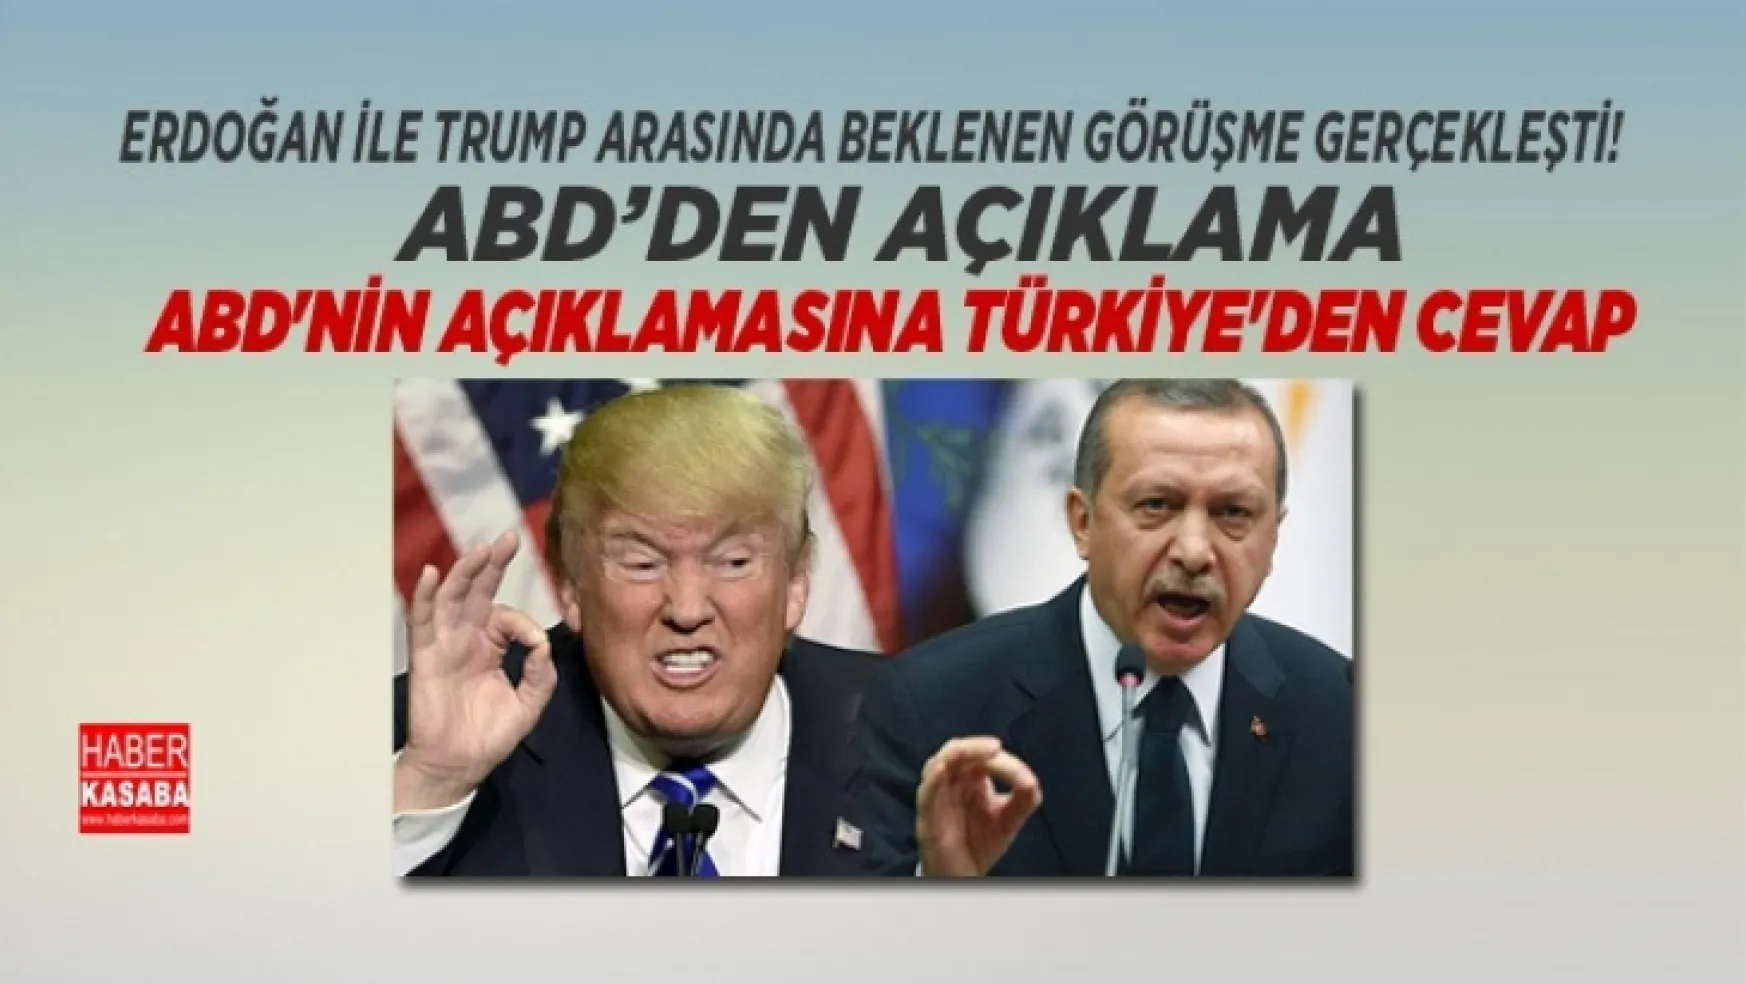 Erdoğan ile Trump arasında görüşme gerçekleşti